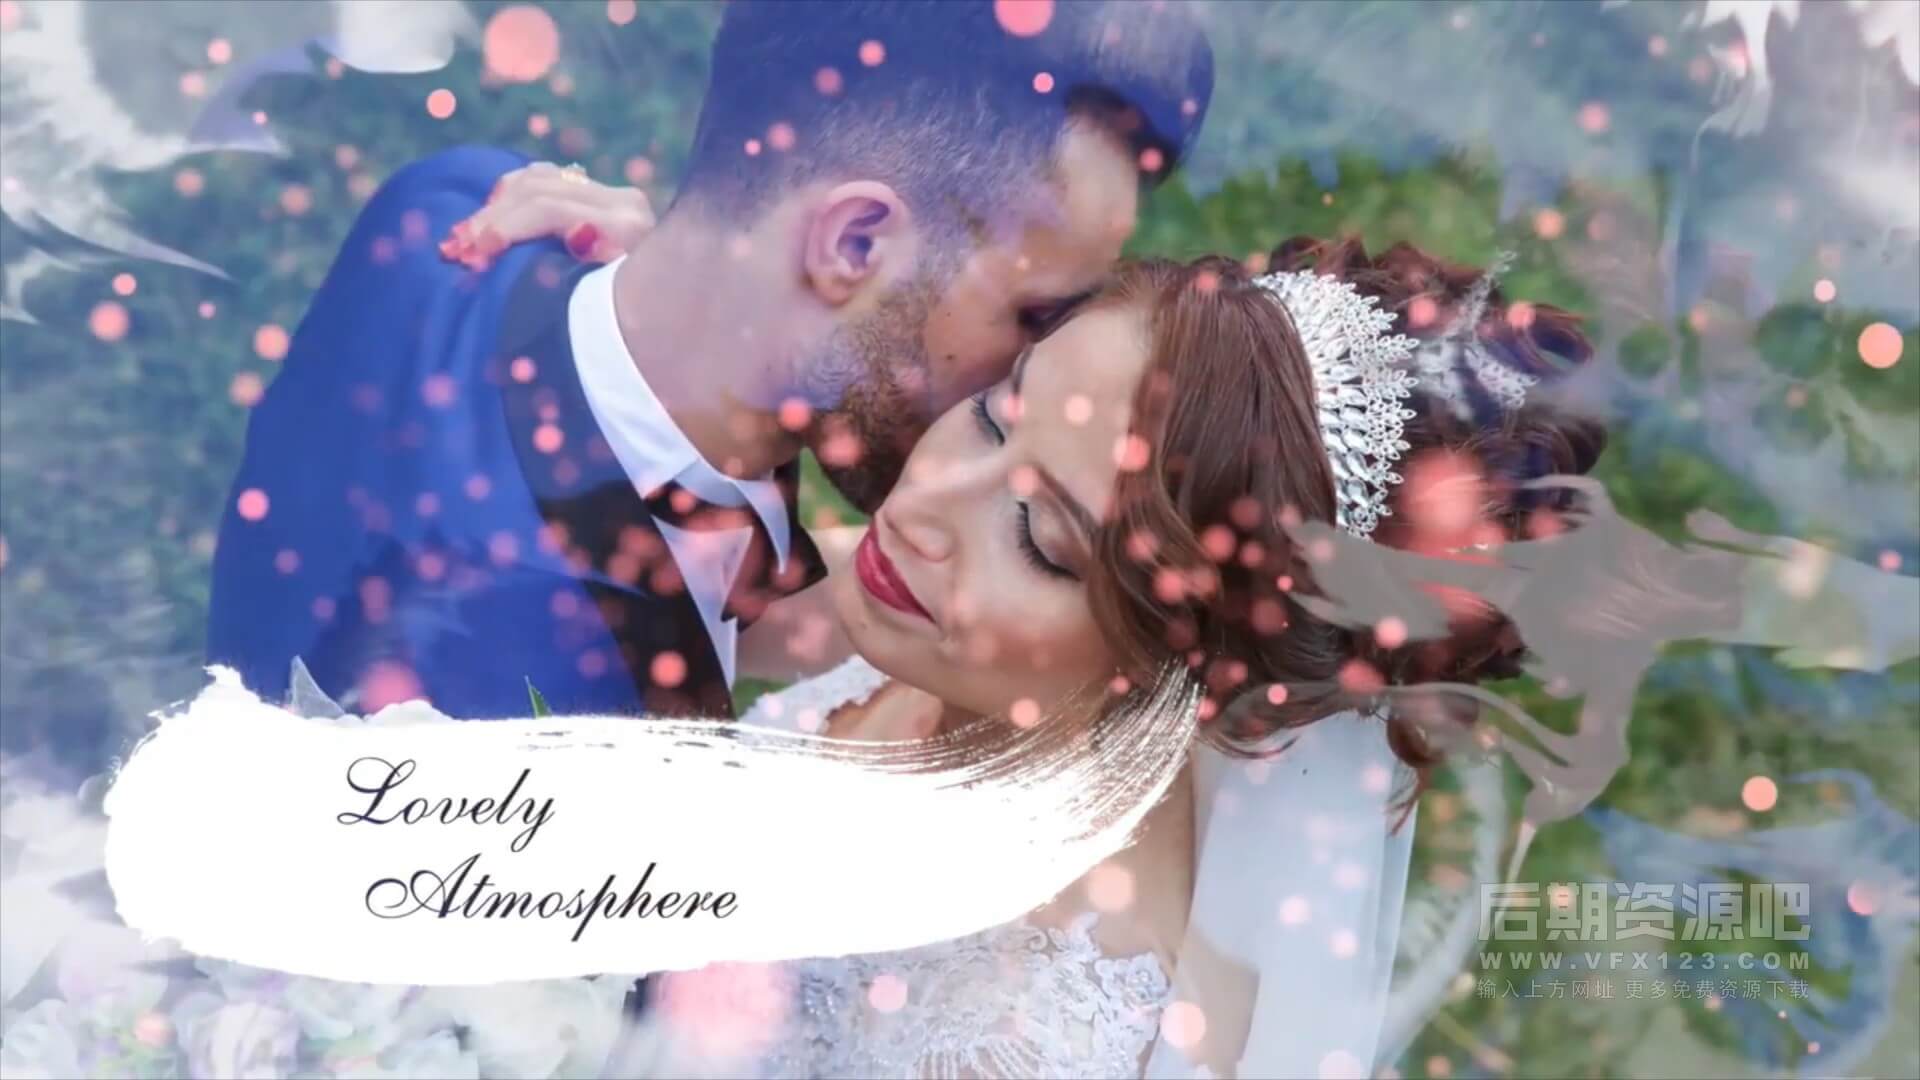 fcpx主题模板 优雅水墨效果浪漫婚礼开场 Wedding Slideshow | MAC影视后期资源站